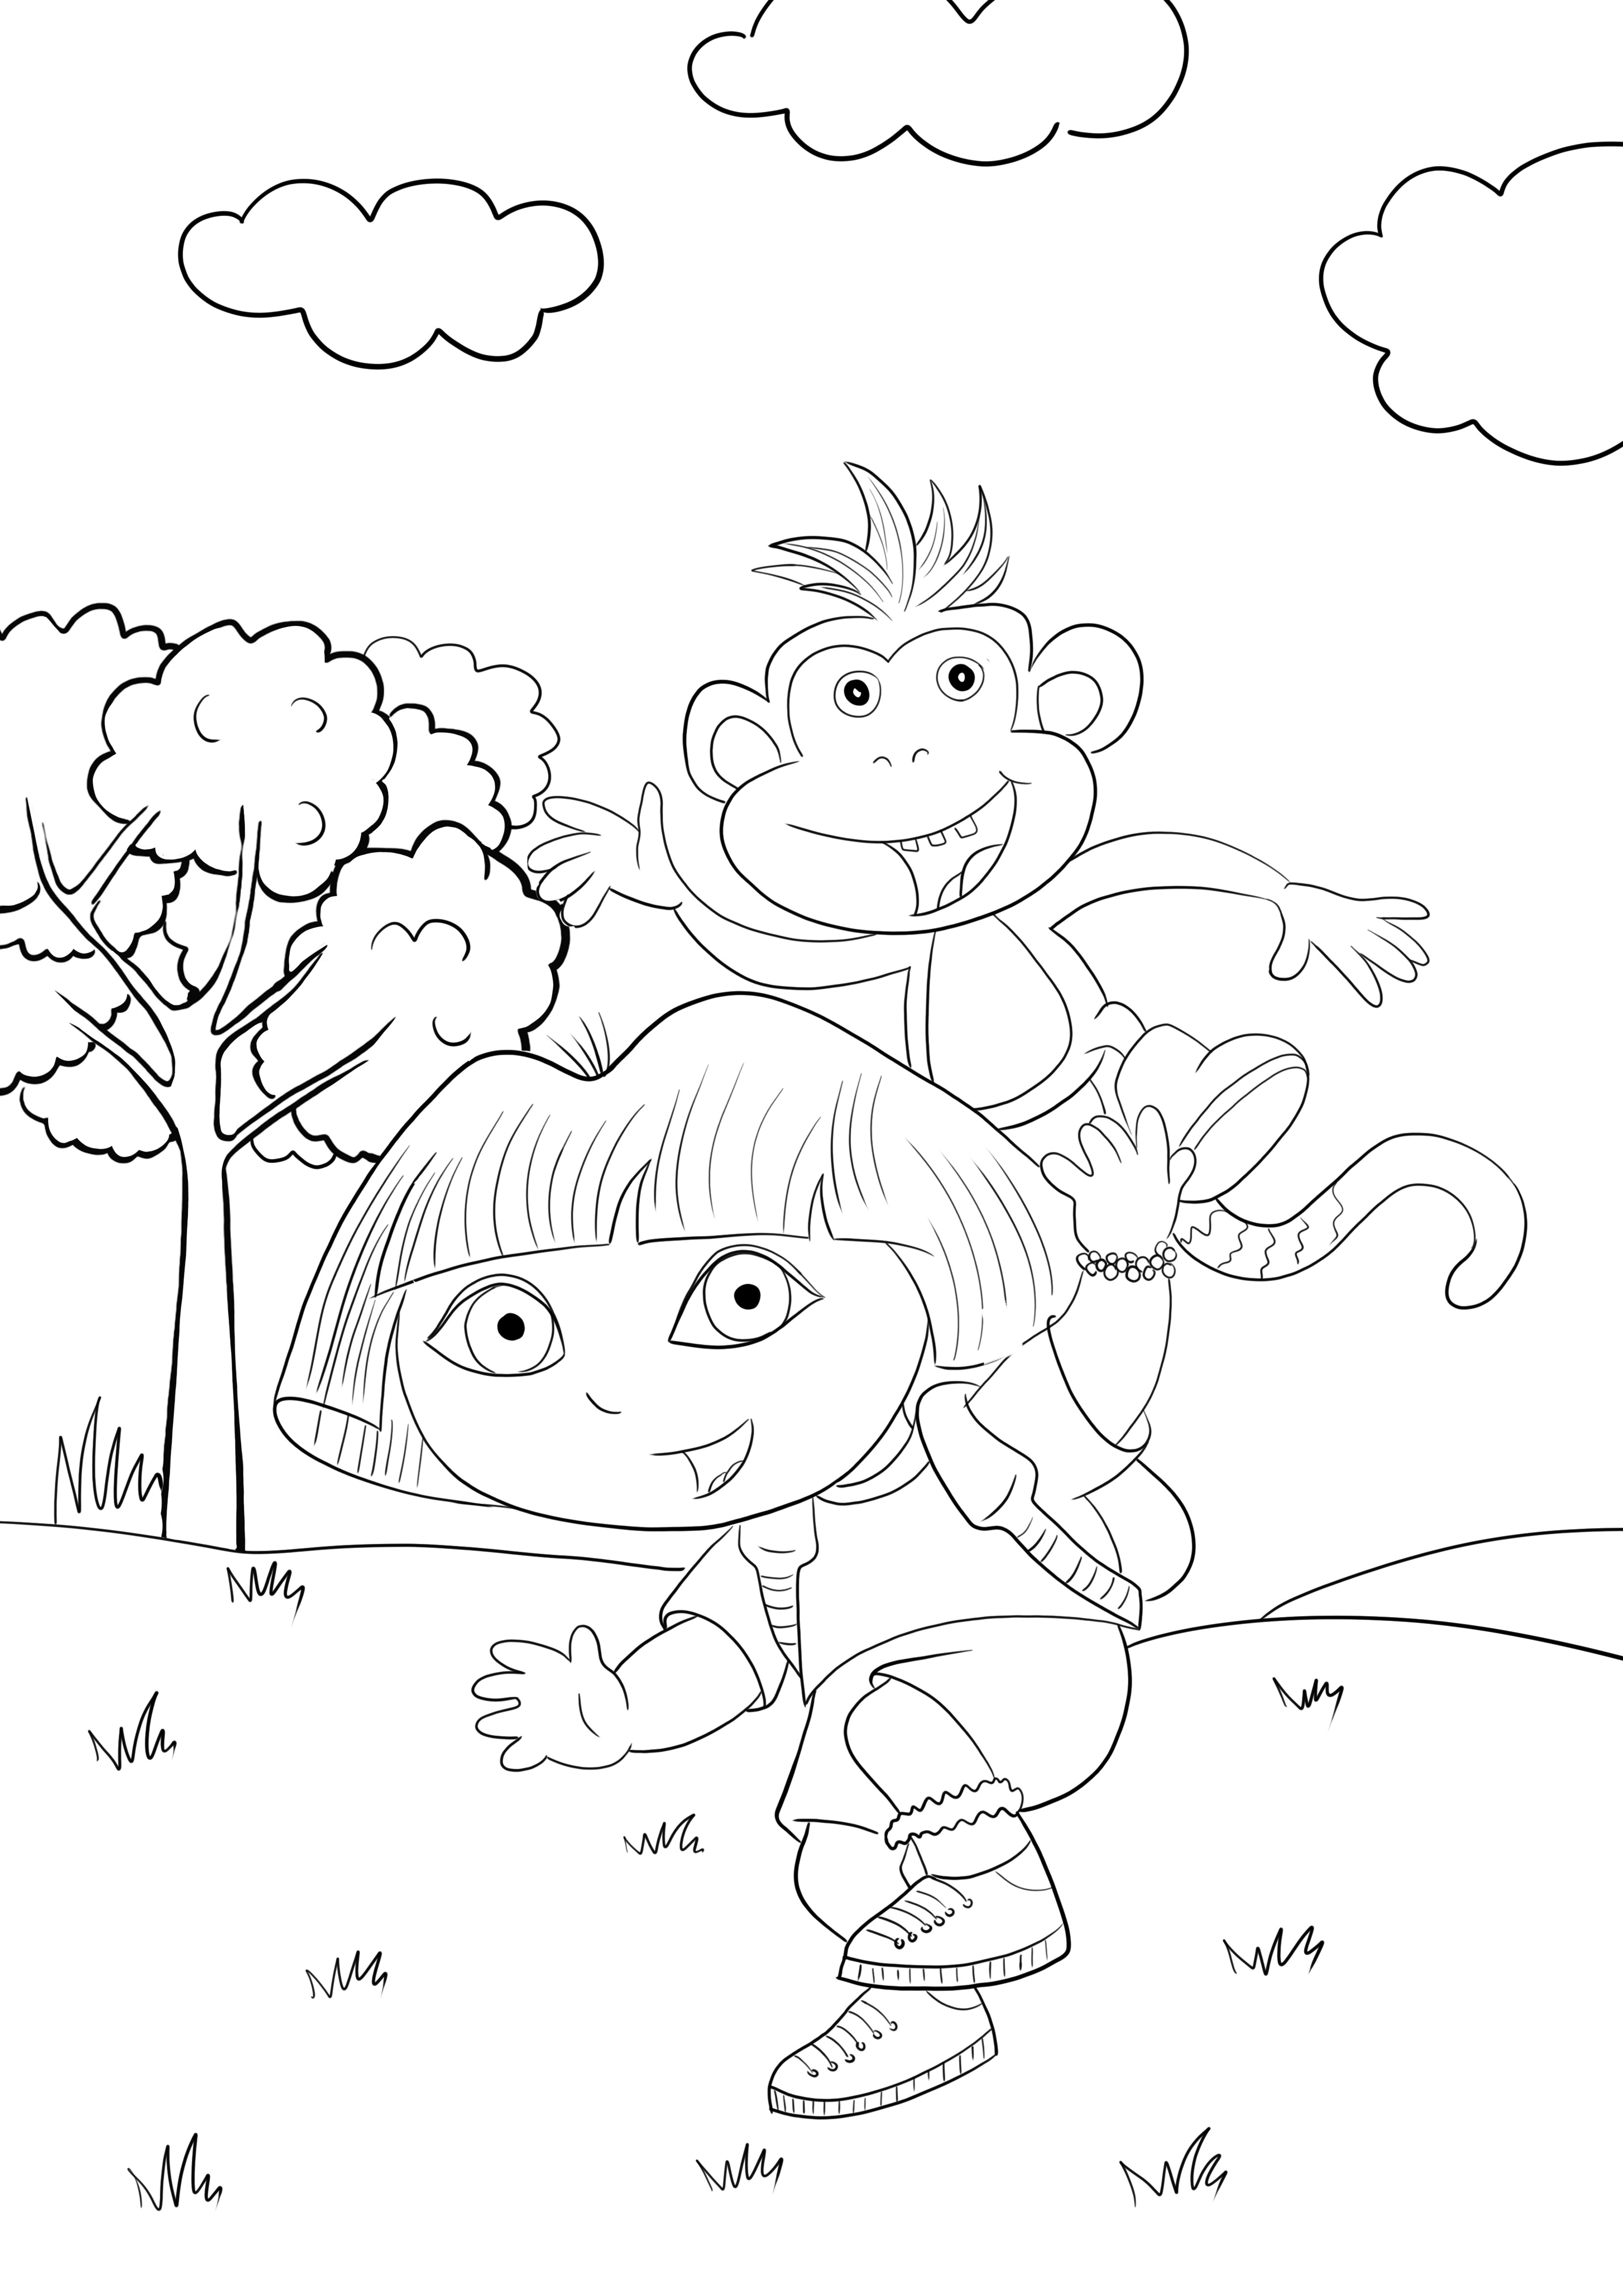 Dora dan Benny si monyet mencetak dan mewarnai gambar gratis